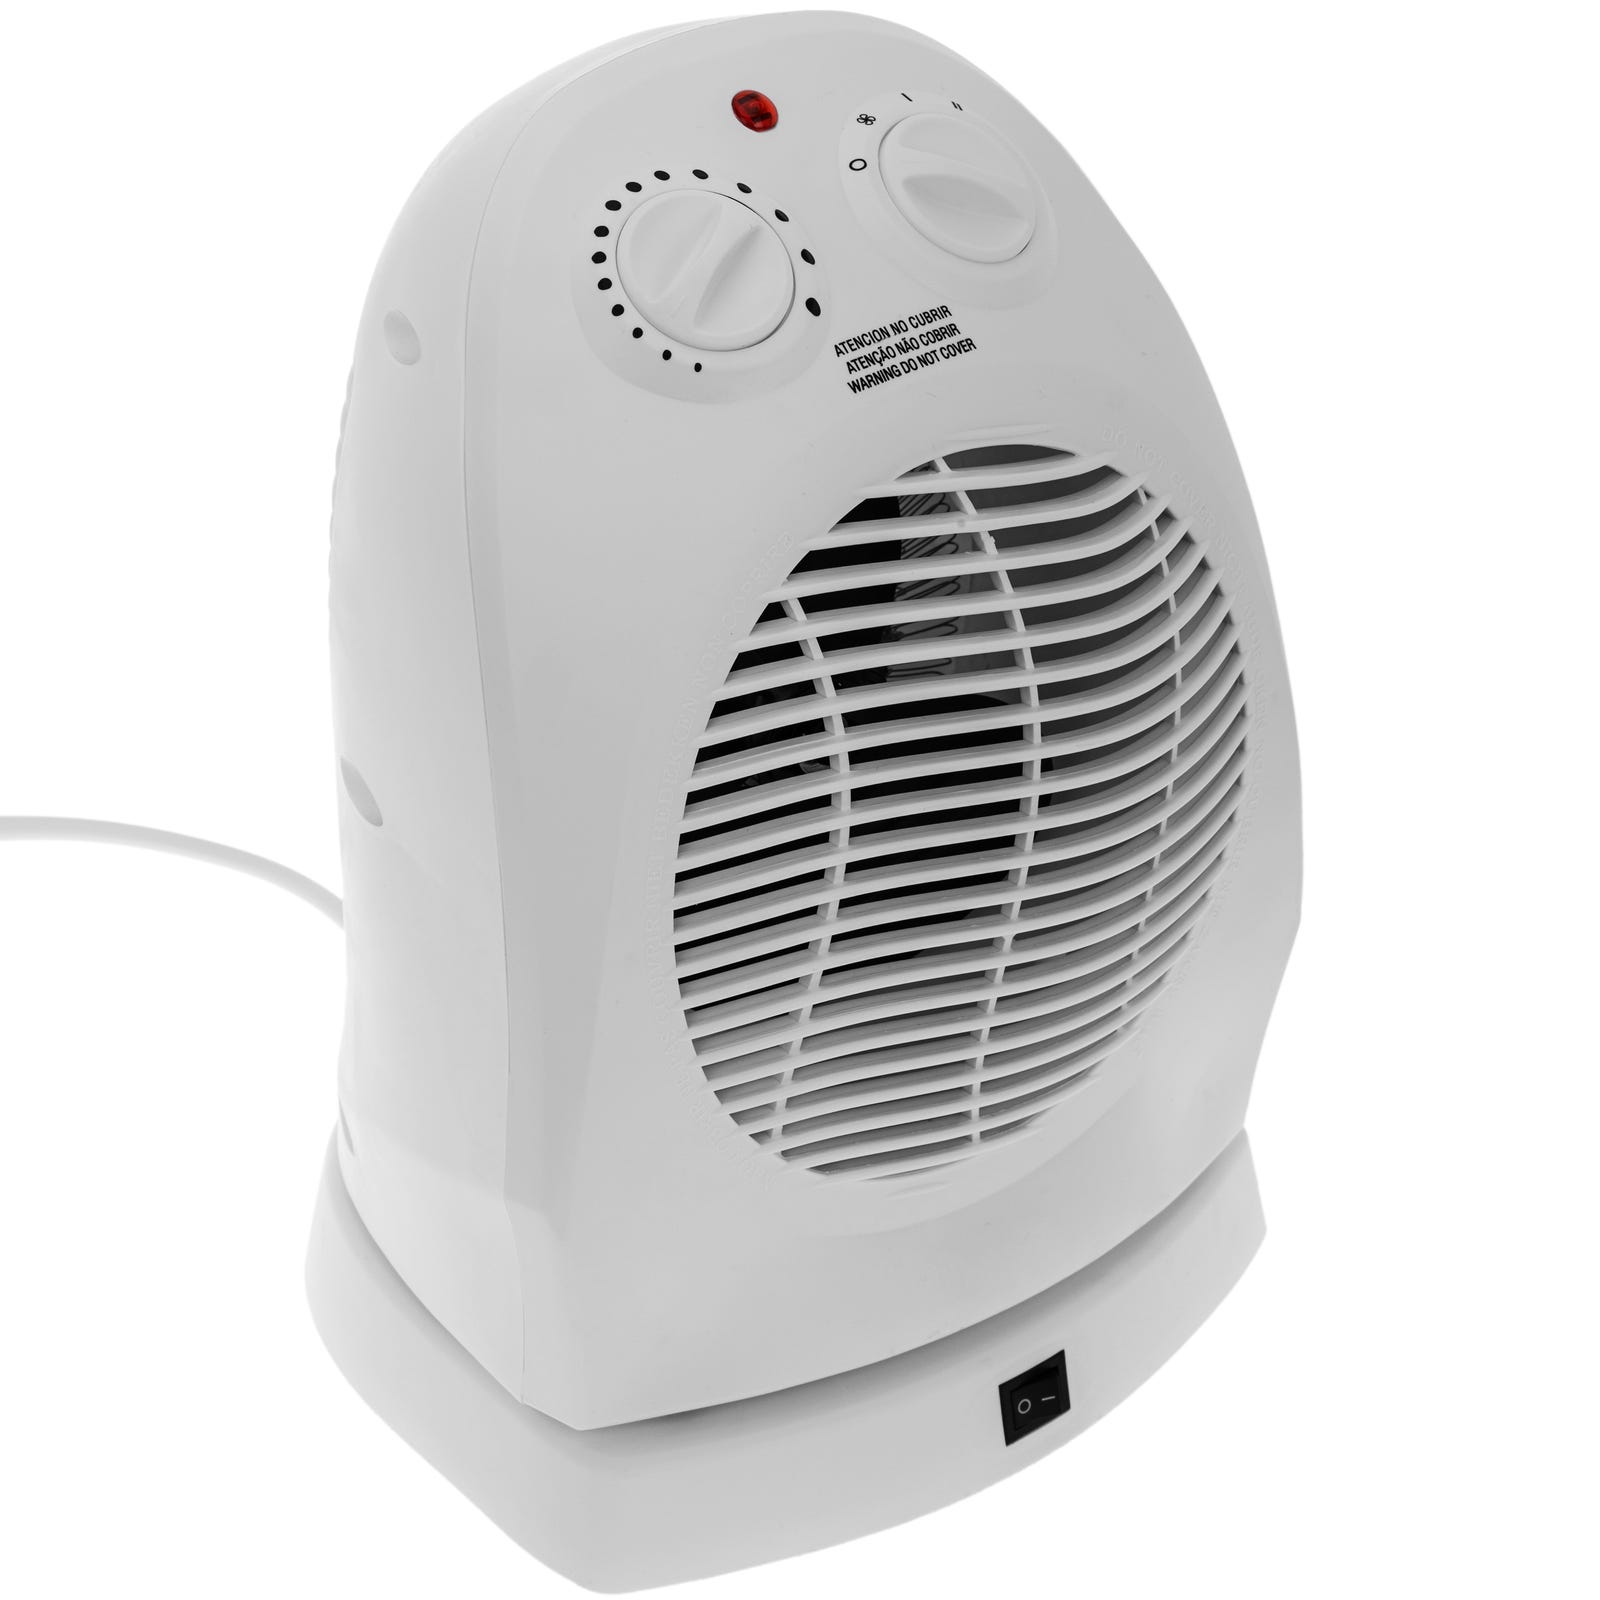 Son eficientes los calefactores de aire?